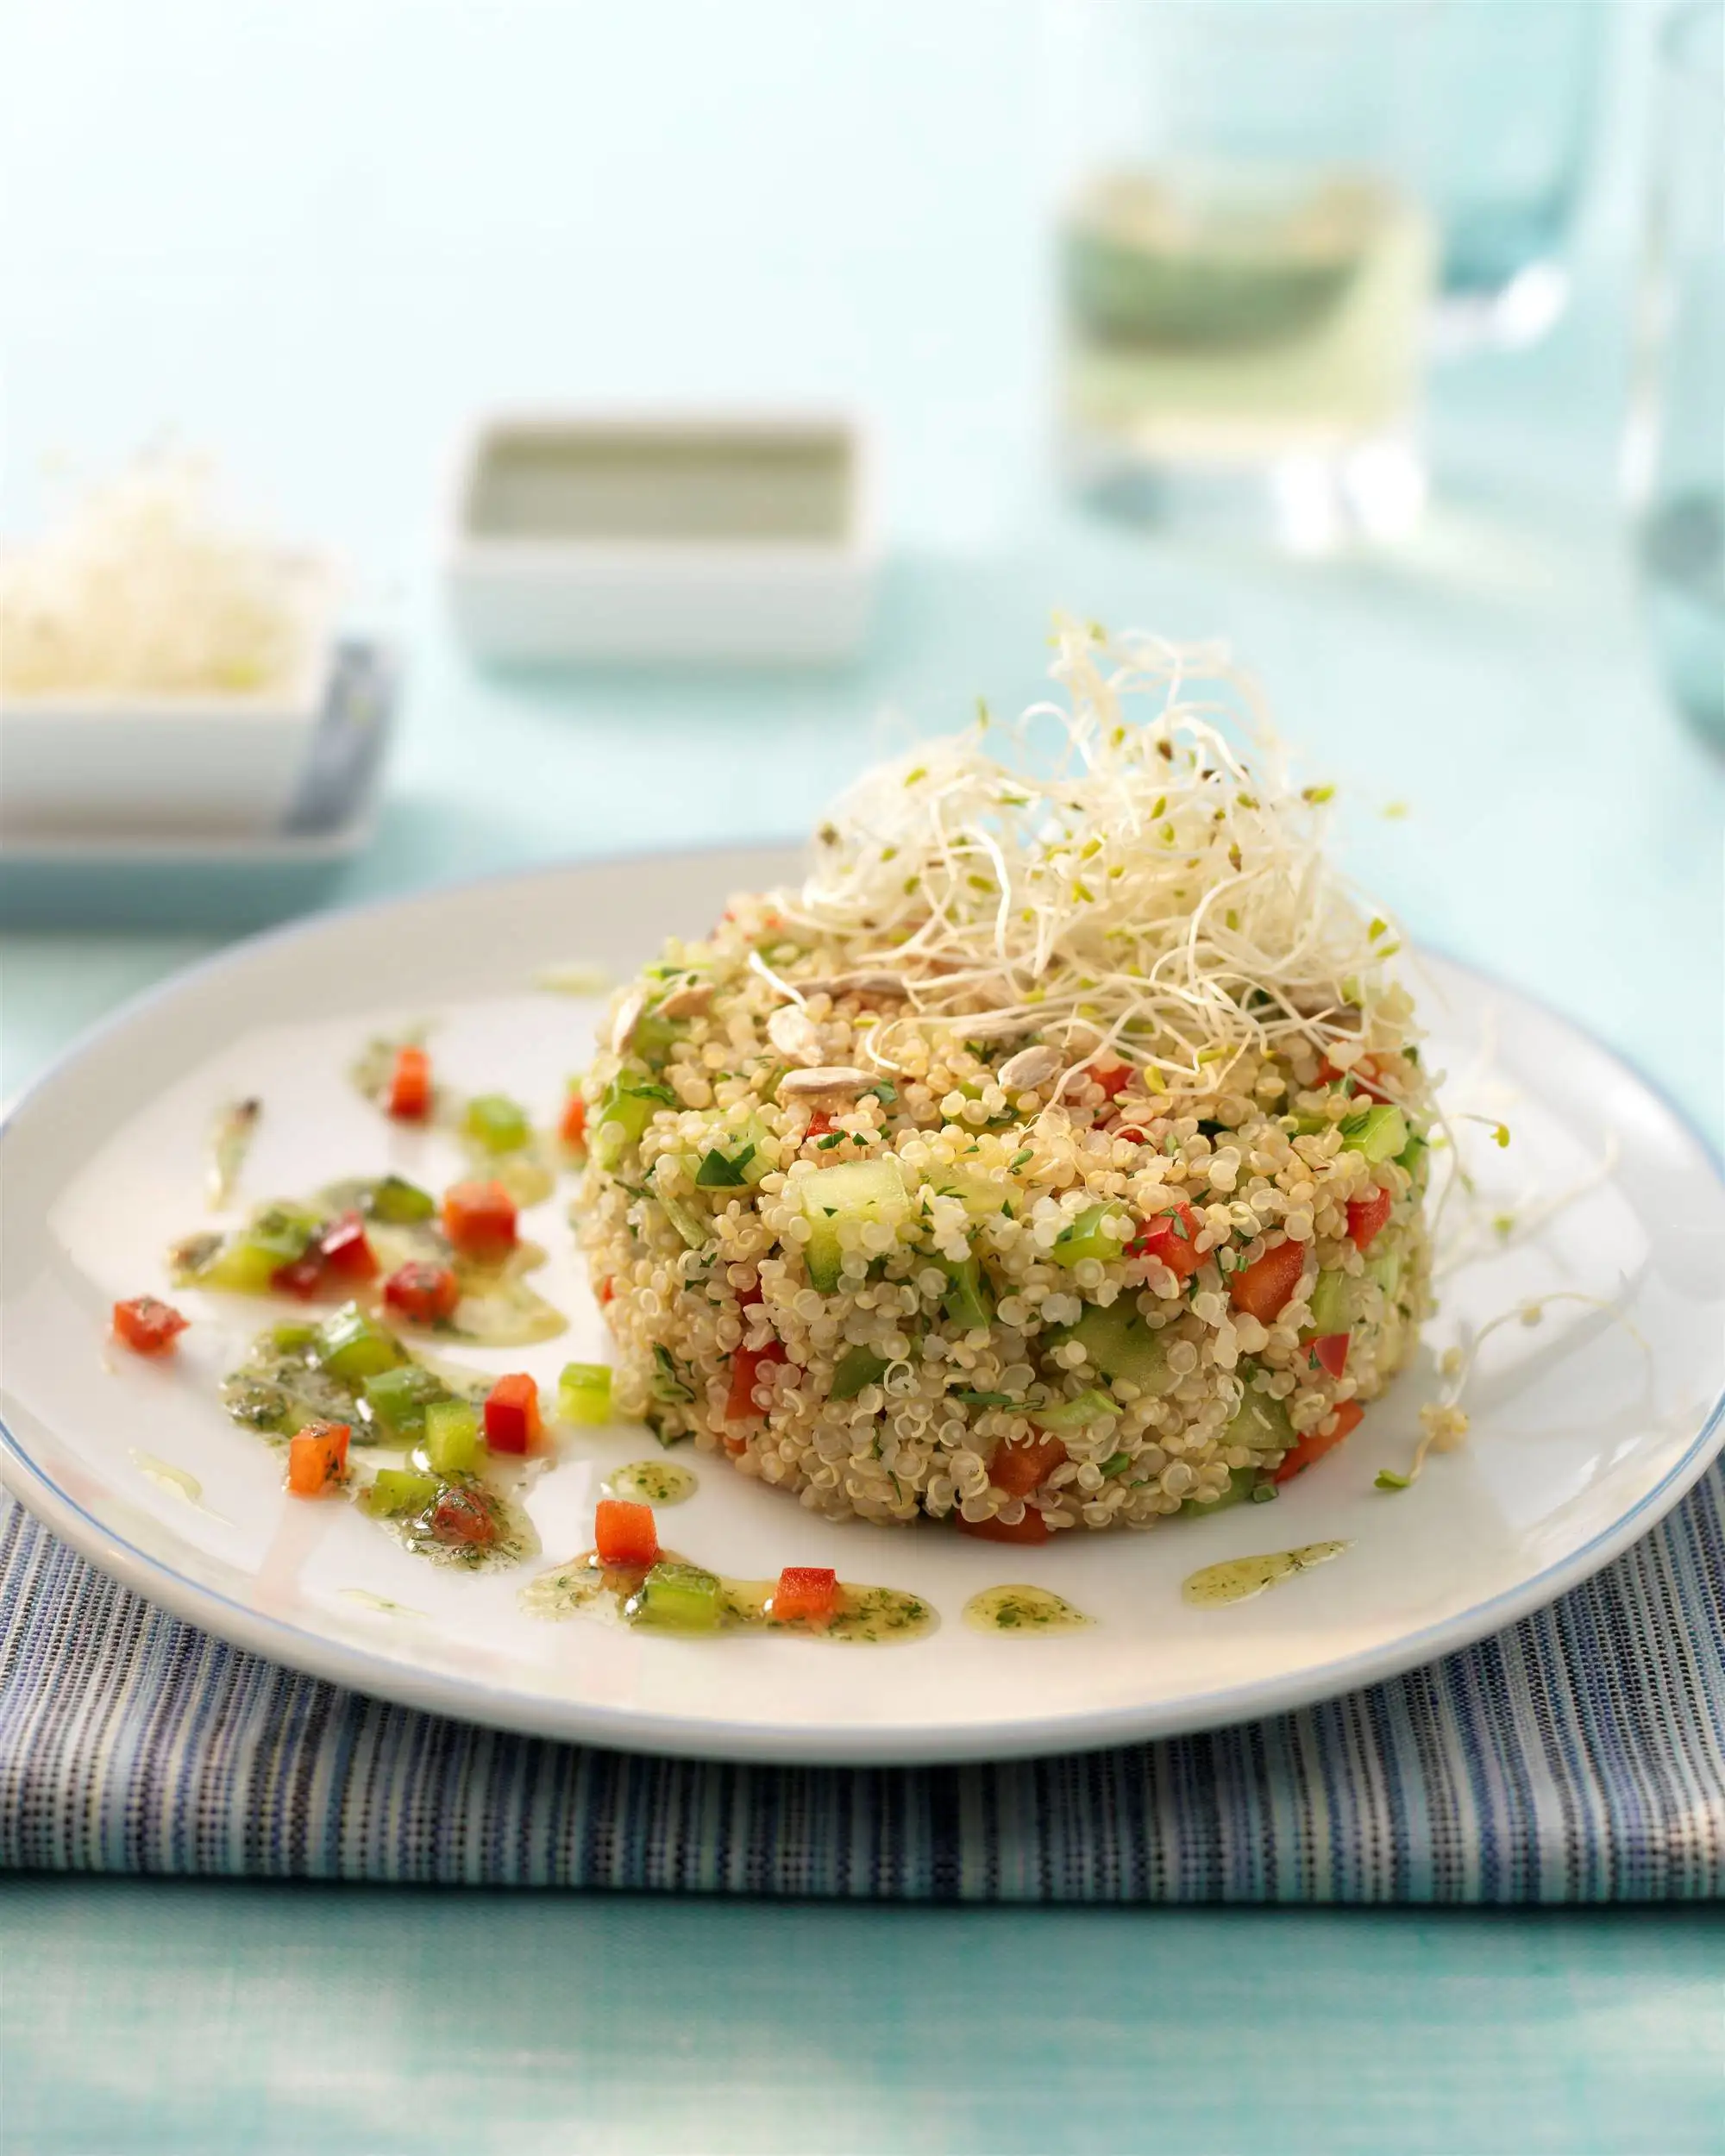 recetas de quinoa para cenar Ensalada de quinoa con alfalfa